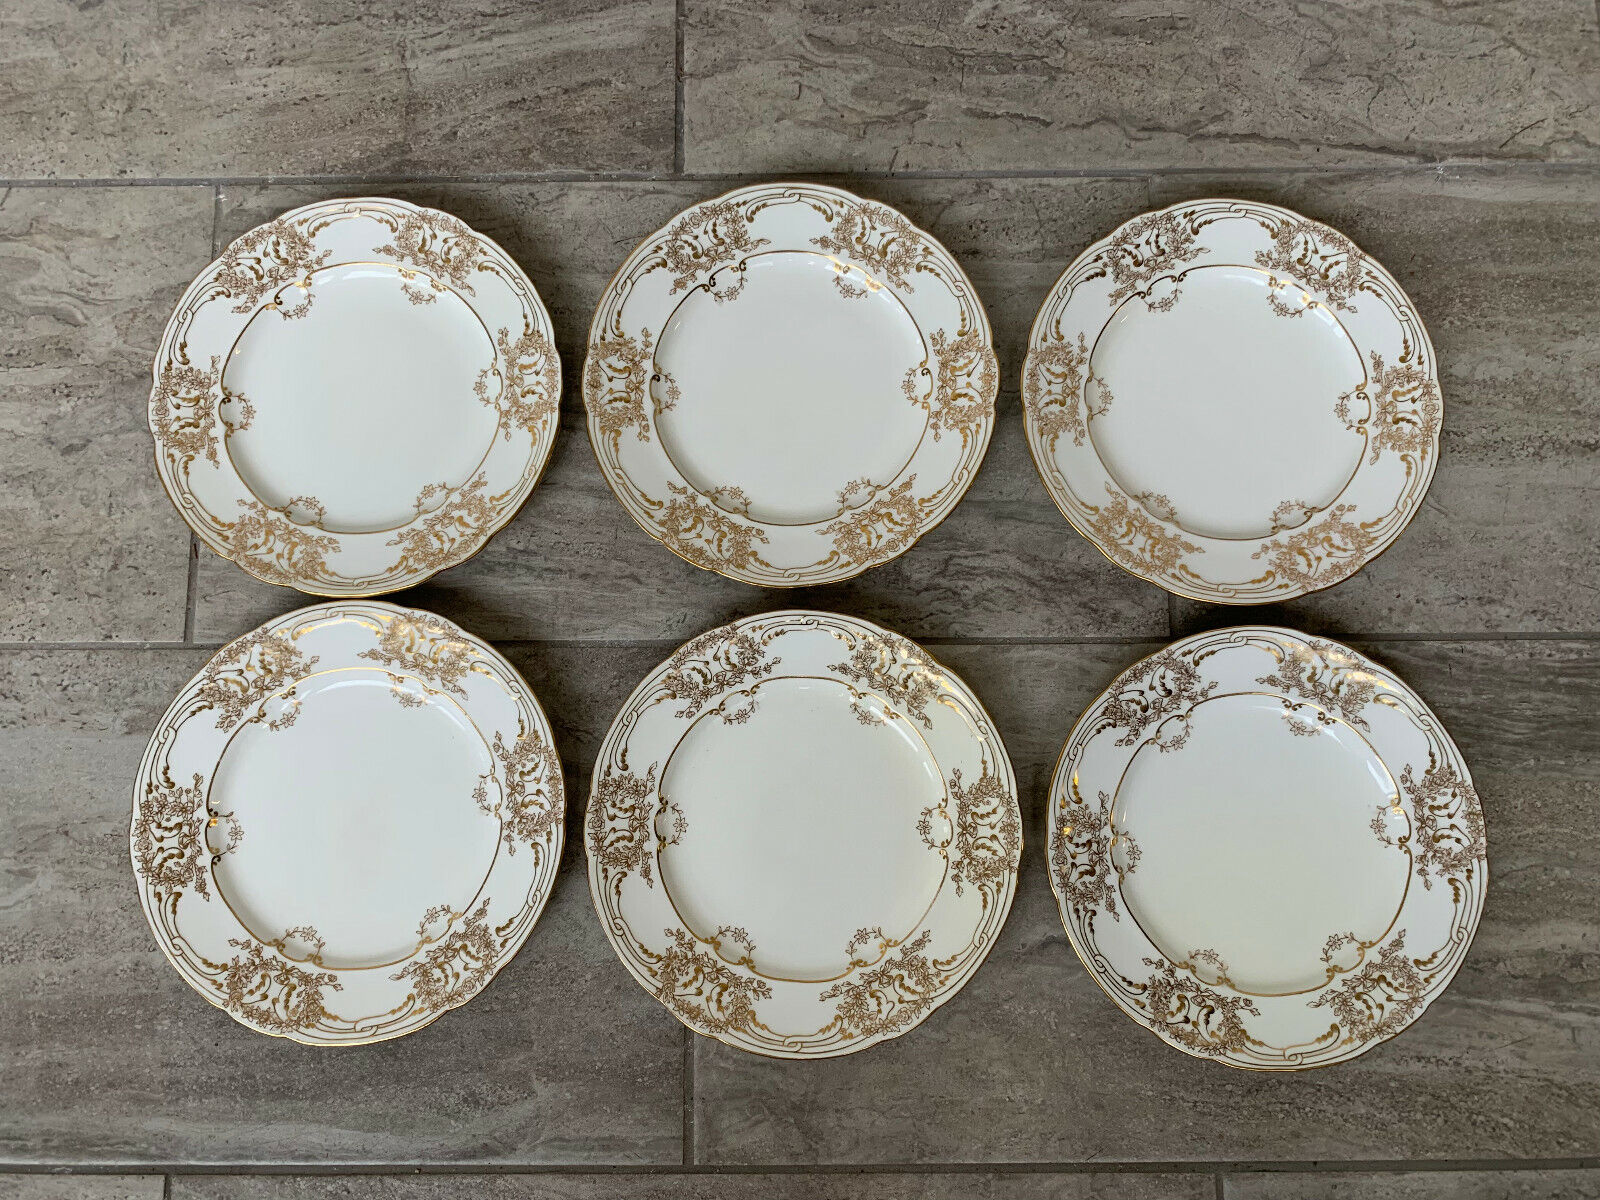 Antique Coalport Porcelain Set of 6 Plates w/ Gold & Floral Decoration